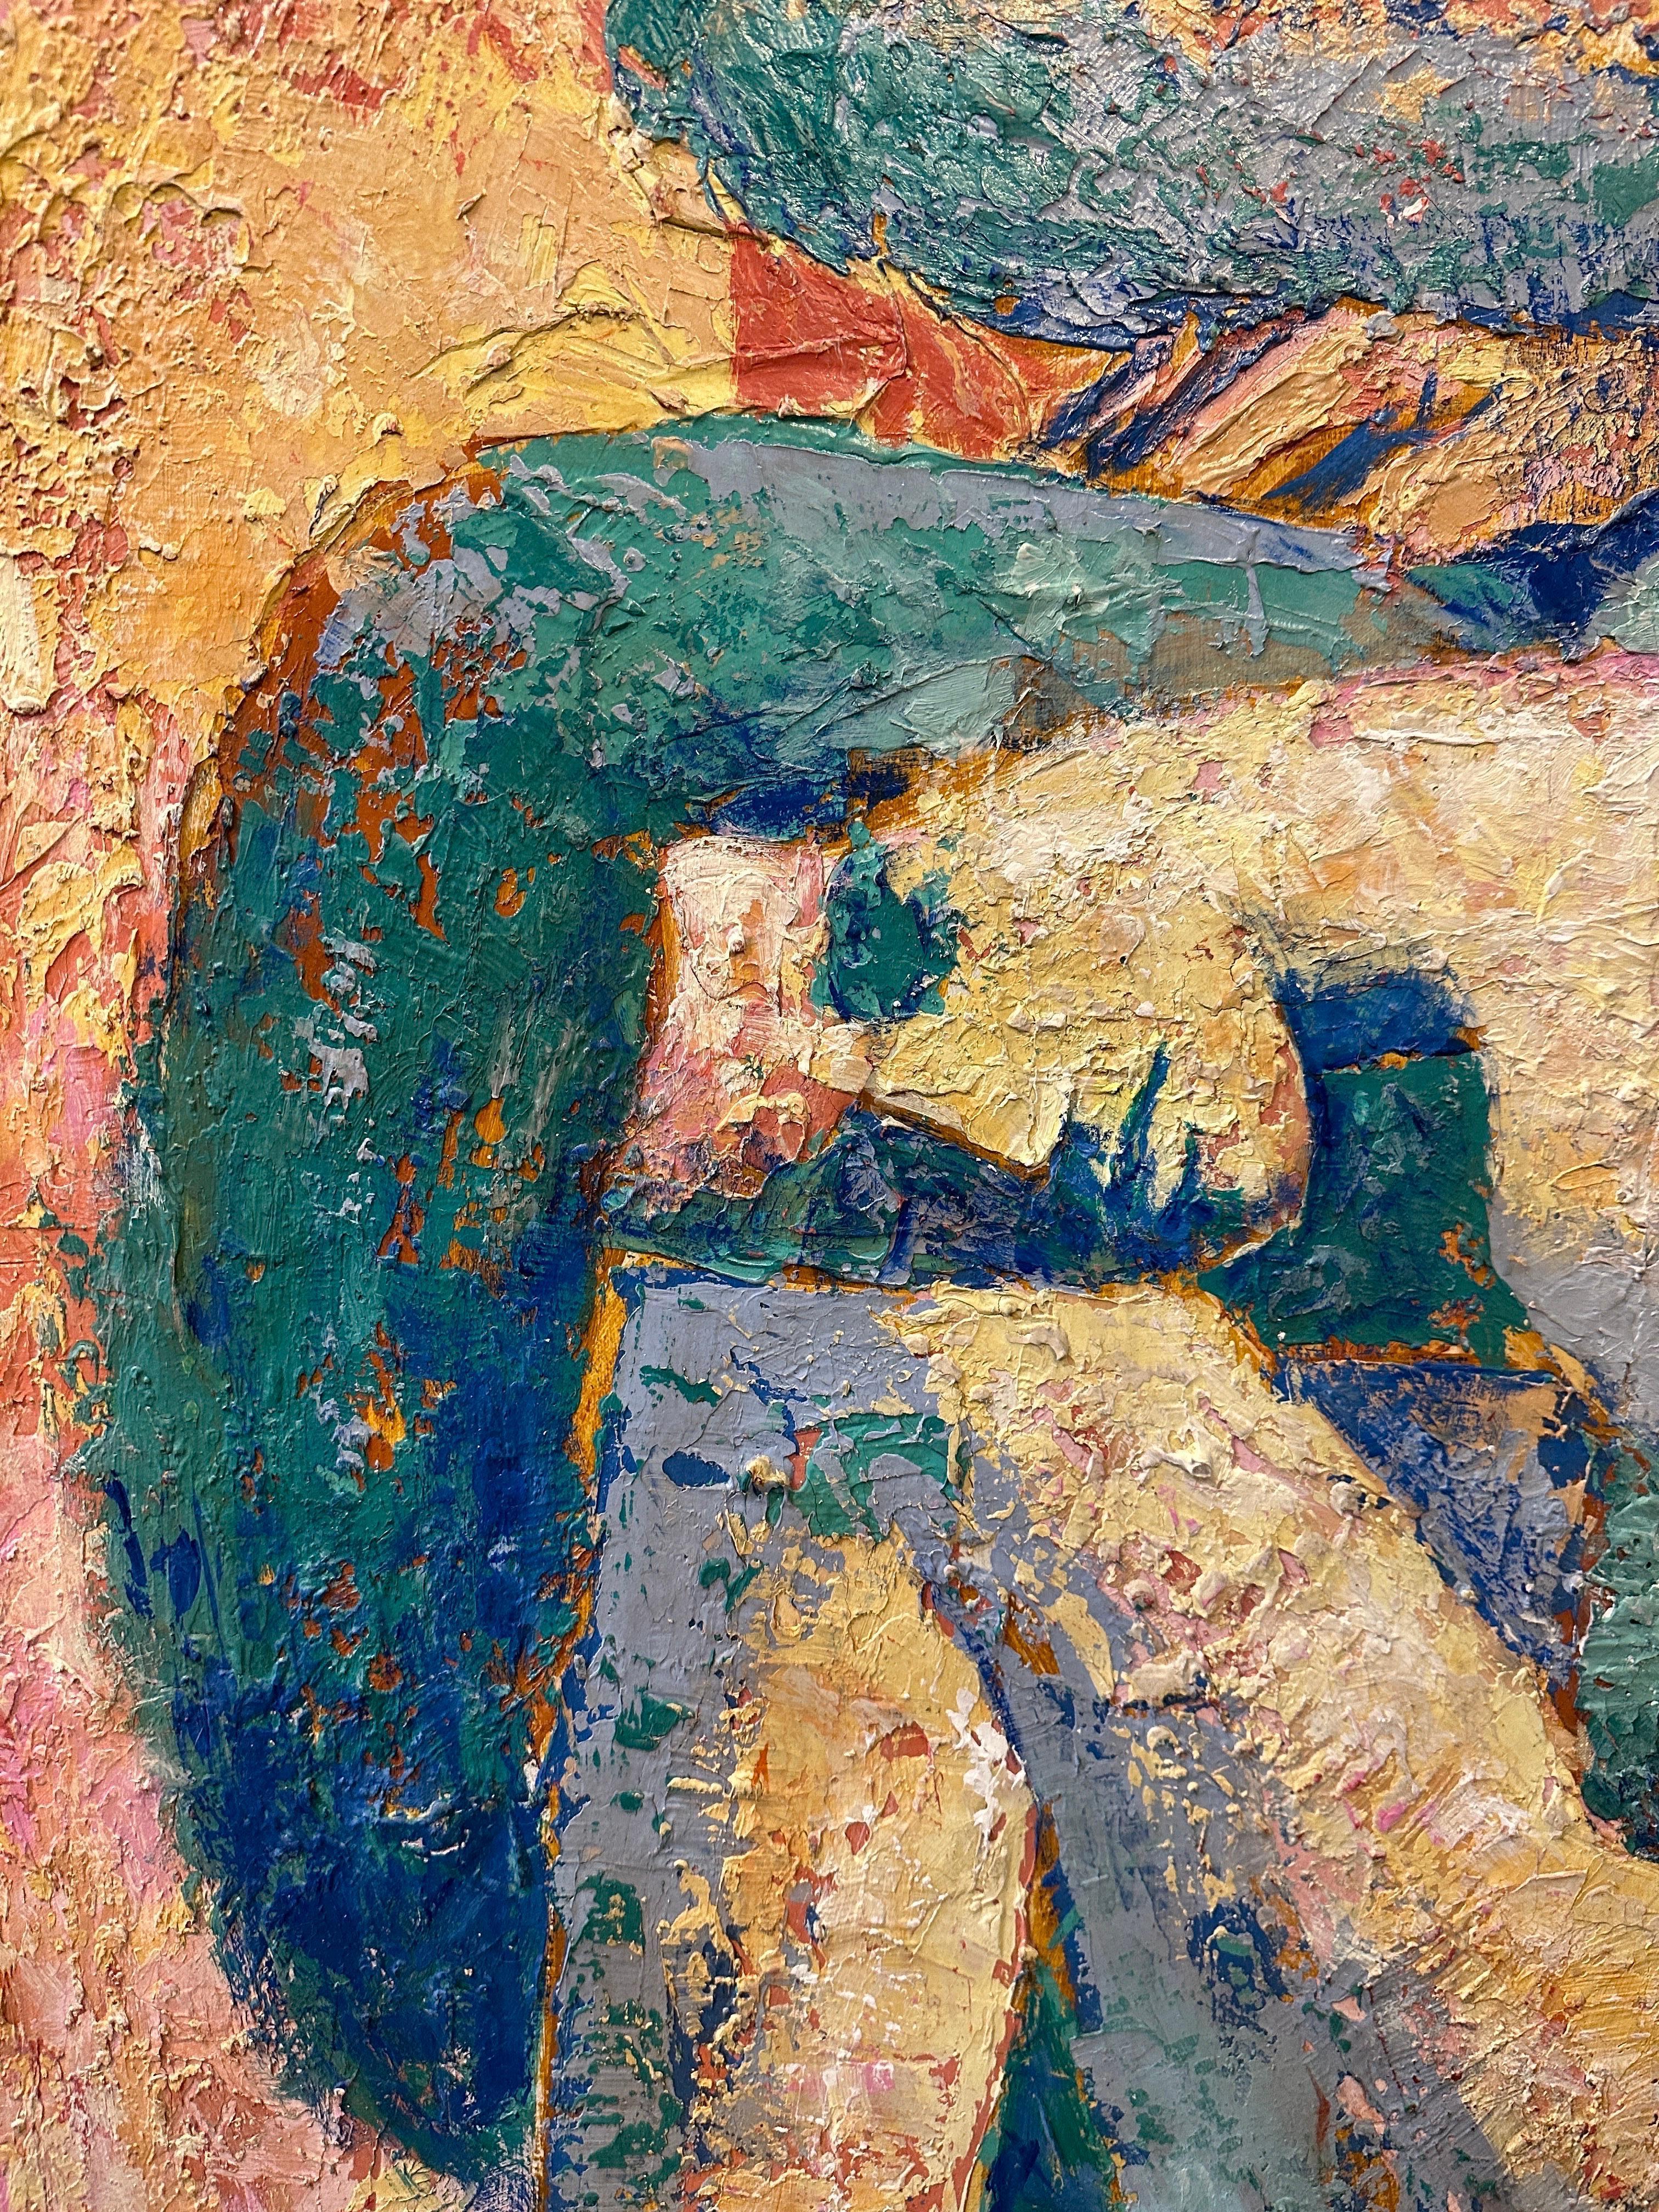 Il s'agit d'une peinture à l'huile sur bois à grande échelle et à l'empâtement, qui rappelle les œuvres de Diego Rivera.  CET ARTICLE EST SITUÉ ET SERA EXPÉDIÉ DEPUIS NOTRE SHOWROOM DE MIAMI, FLORIDE.

Harry LeMay a étudié à CUNY, à l'USMM Academy